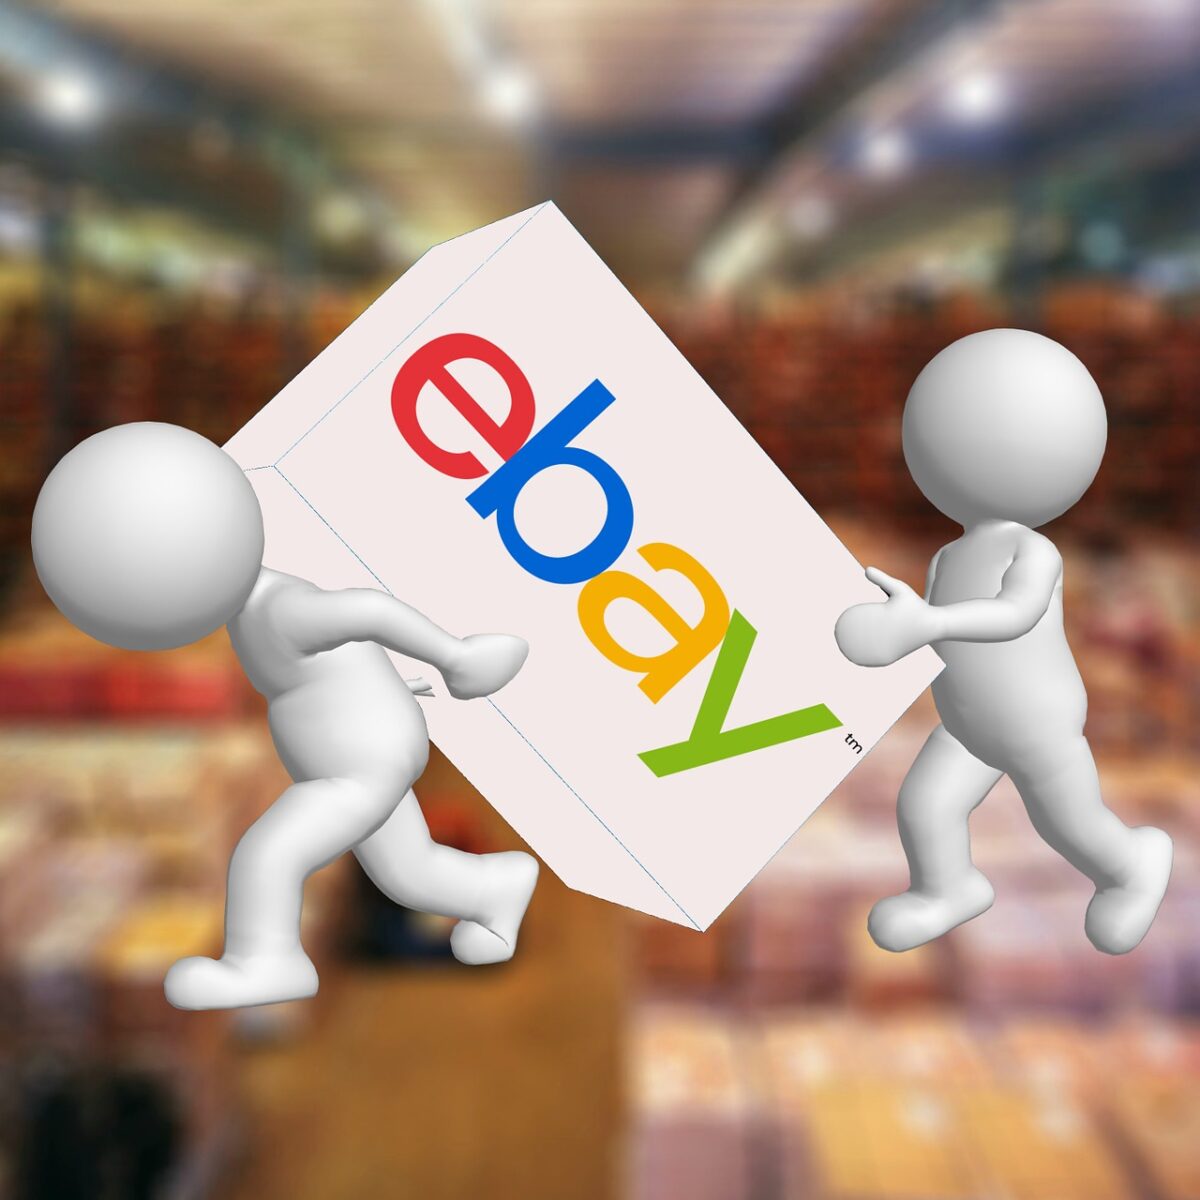 Νέα συνεργασία της Εθνικής Τράπεζας με το eBay